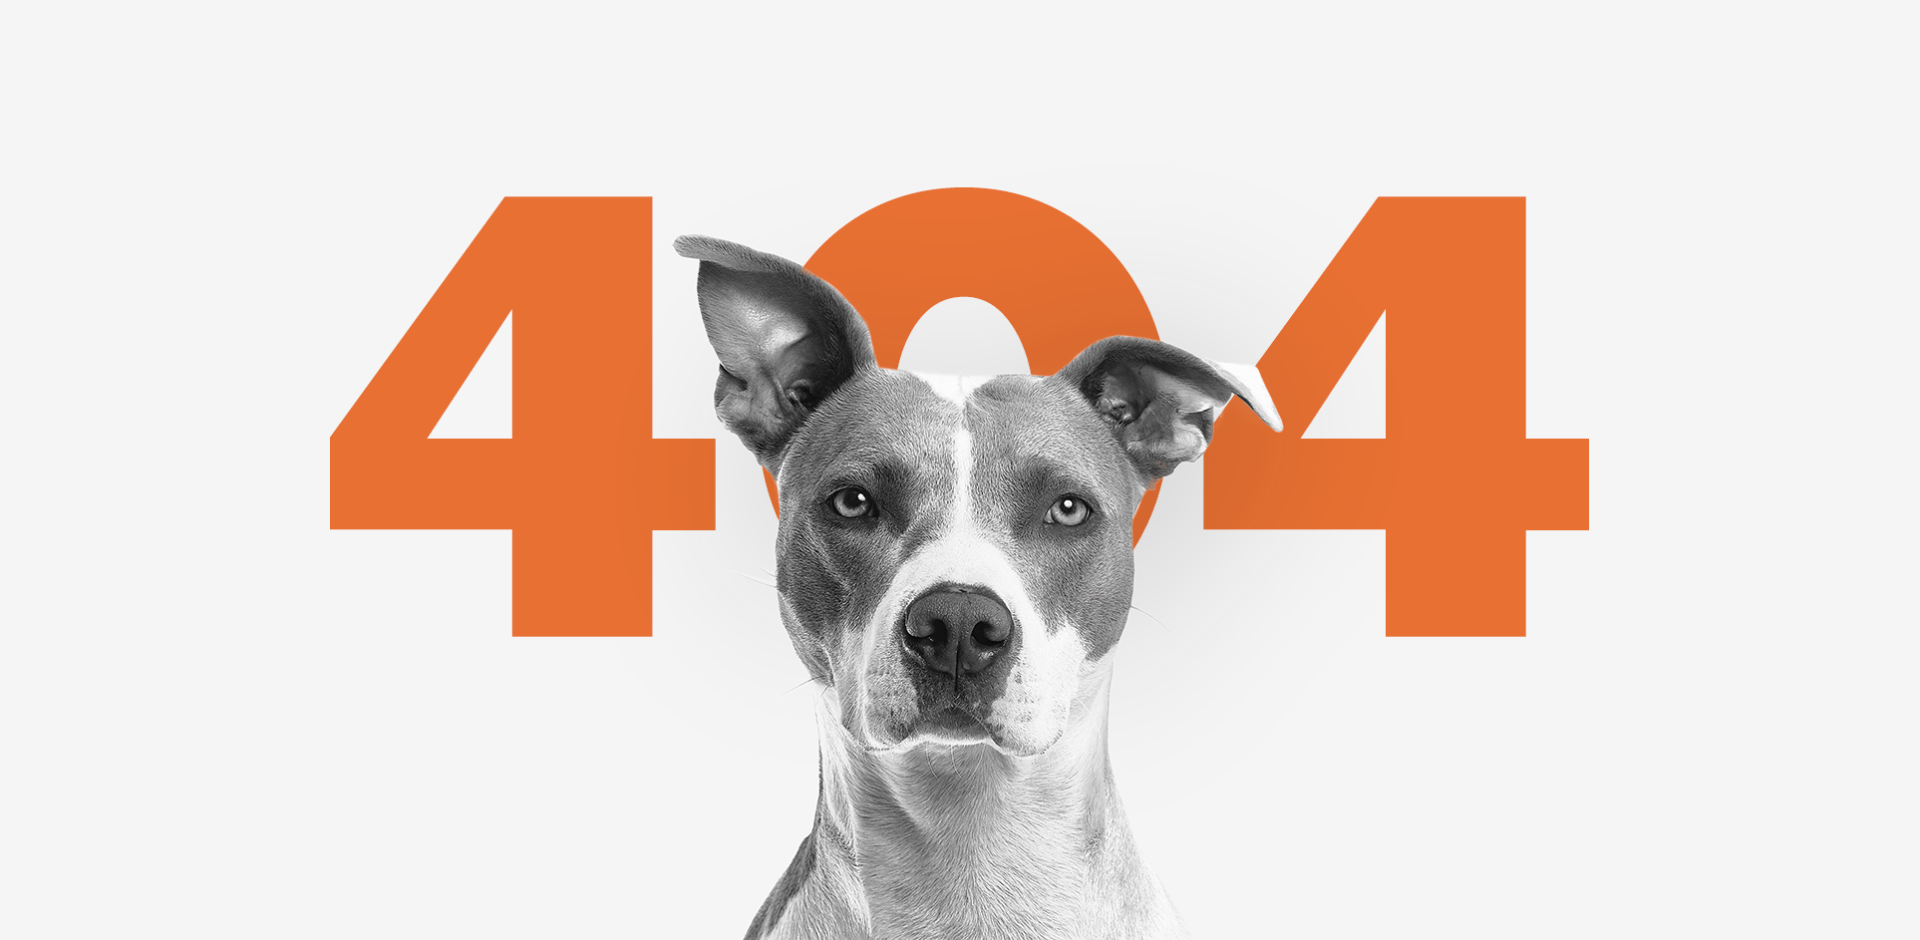 Voor het nummer 404 zit een hond.